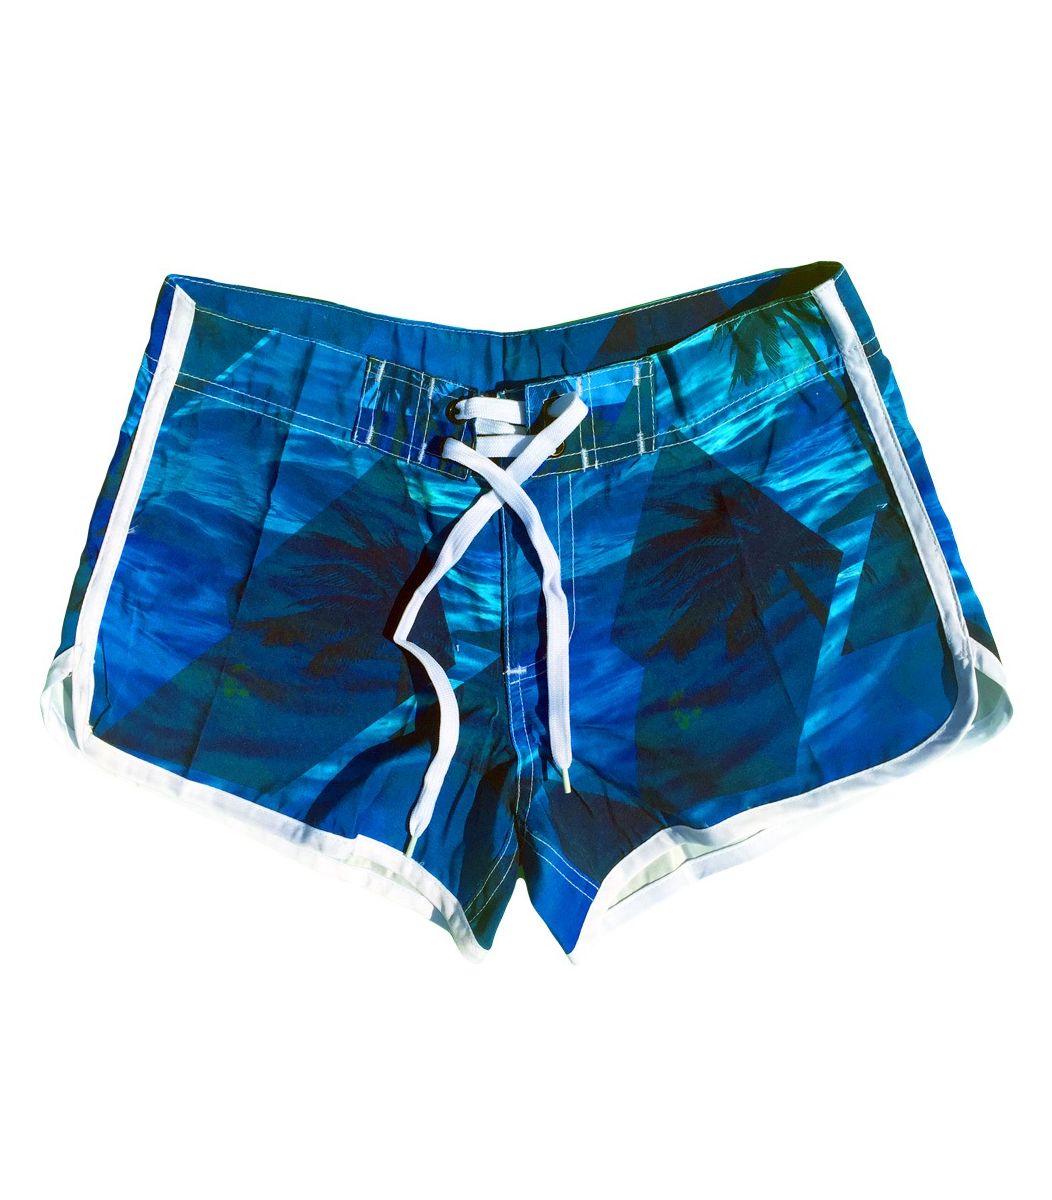 Swimwear shorts, blue